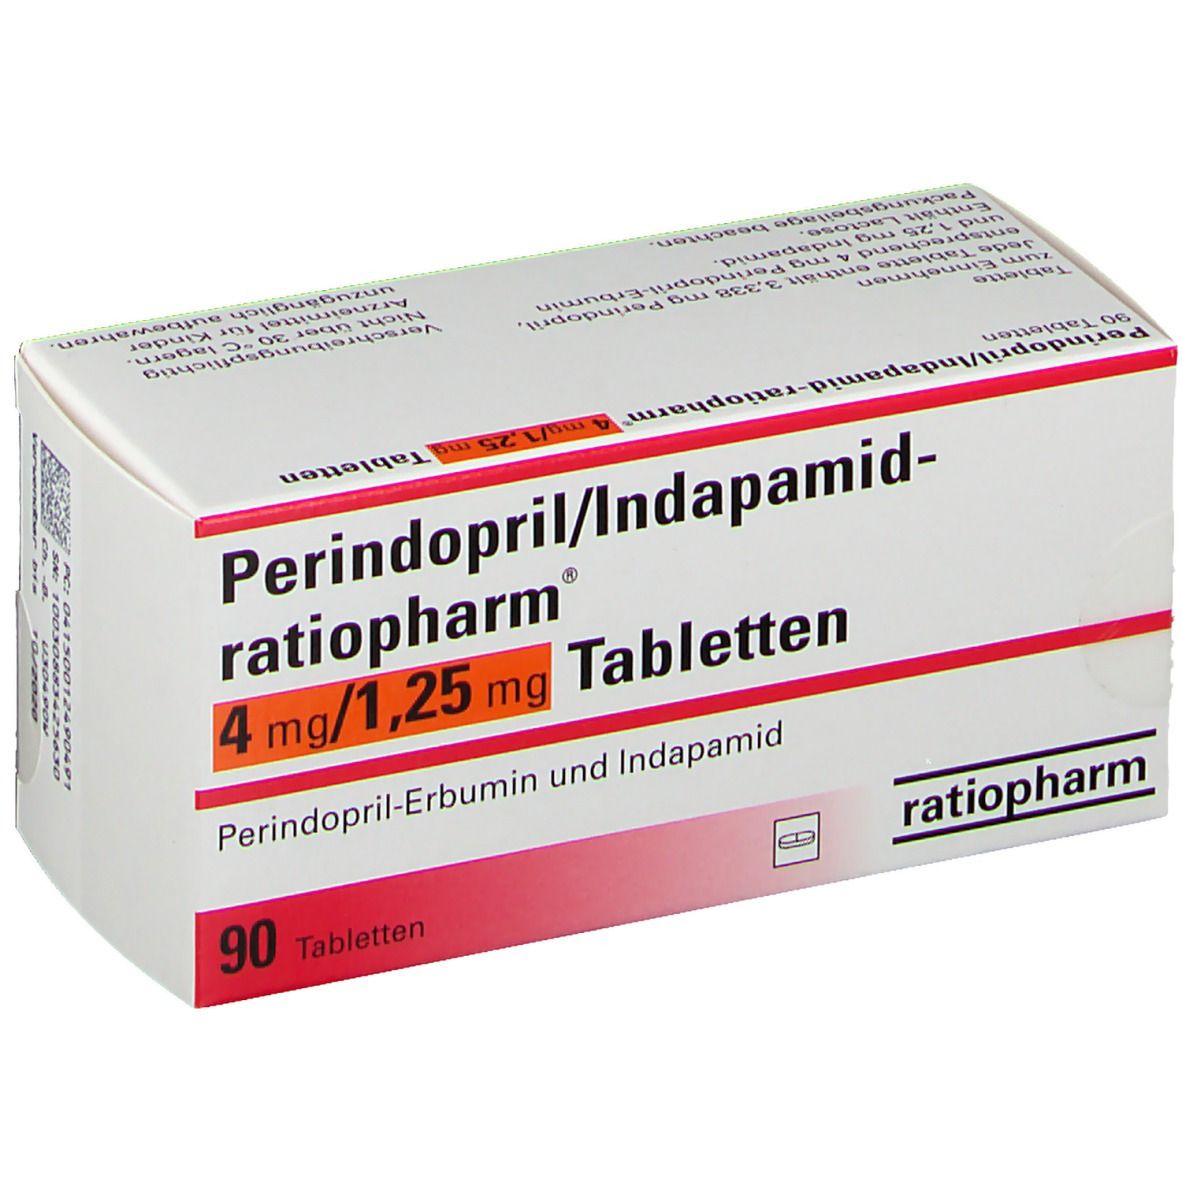 Периндоприл 2.5 купить. Периндоприл индапамид 4 мг+1.25. Индапамид периндоприл 1.25+5. Периндоприл 4 мг индапамид 1.25 мг. Периндоприл плюс индапамид 1.25 +4 мг.